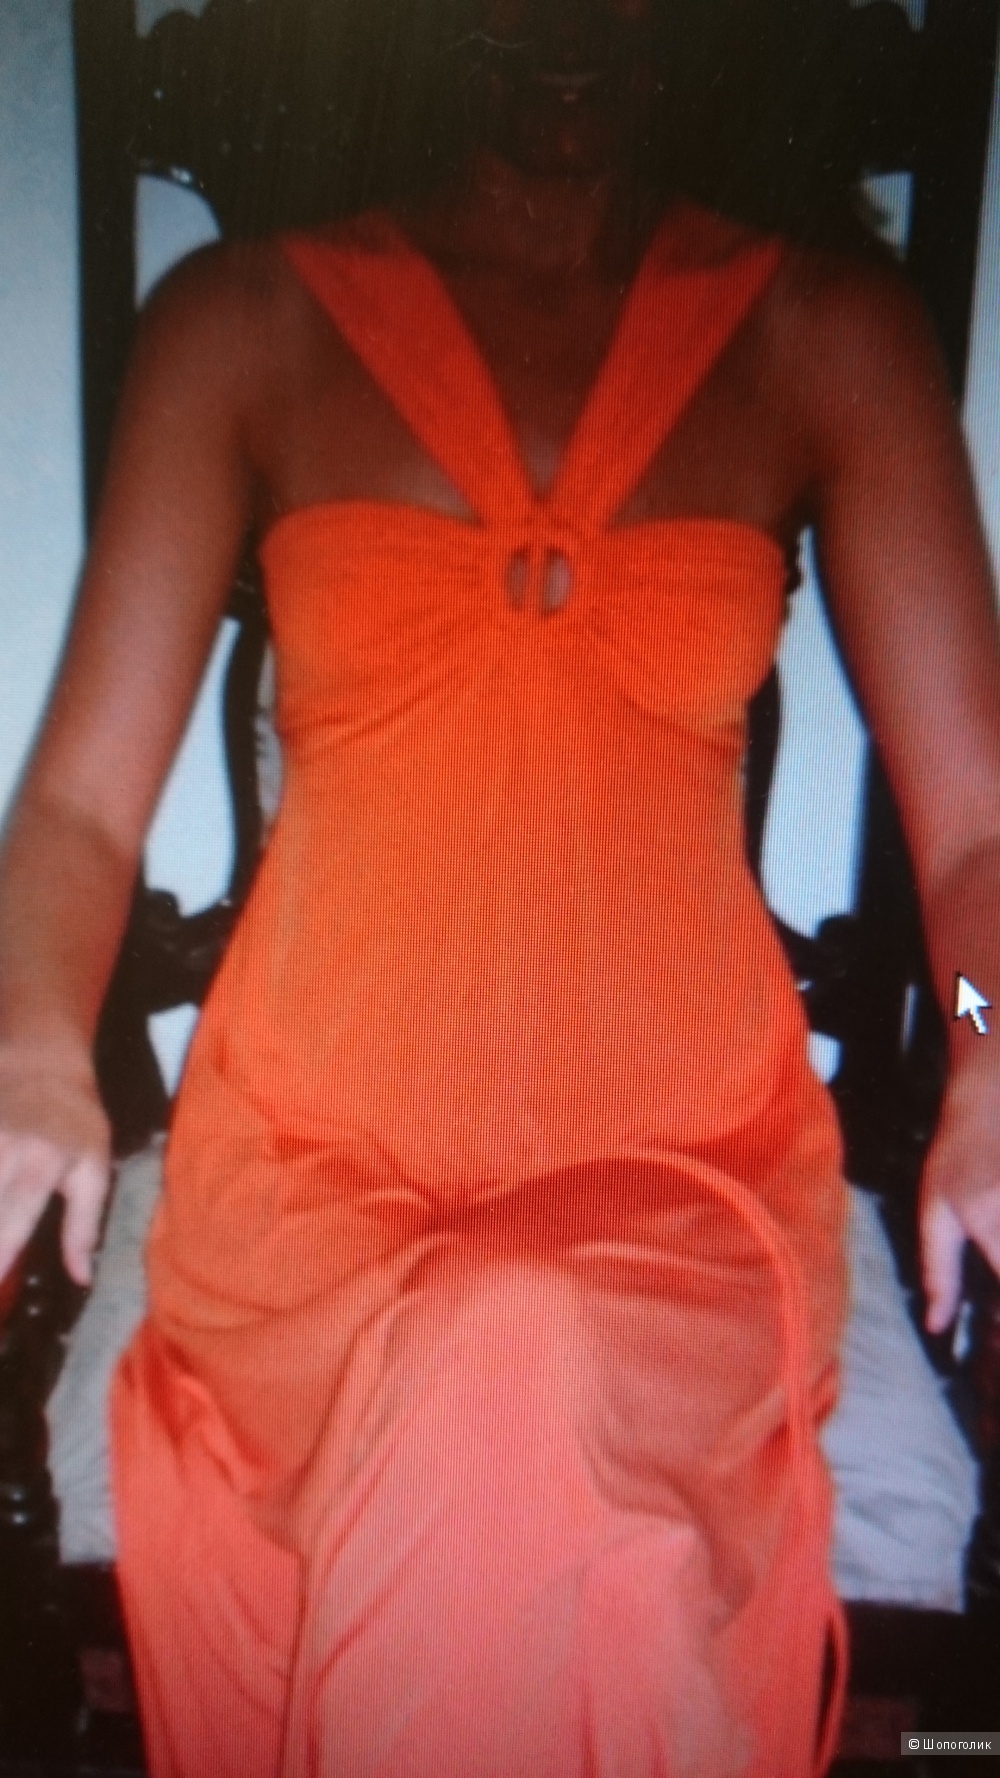 Длинное оранжевое платье